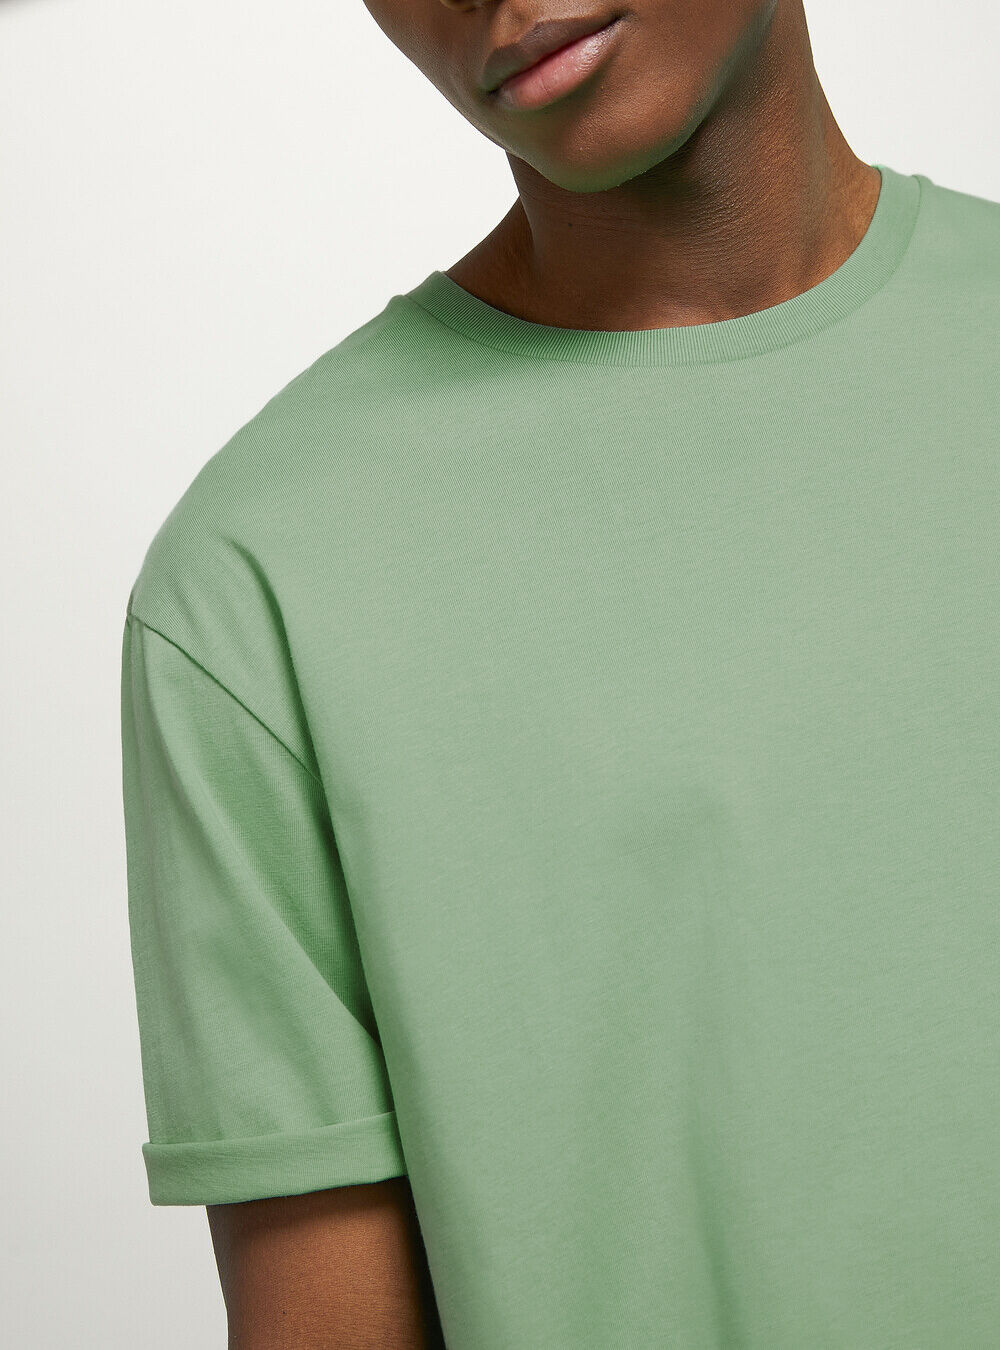 Alcott Männer Crew-Neck Cotton T-Shirt Ky3 Kaky Light Produktverbesserung T-Shirts – 1